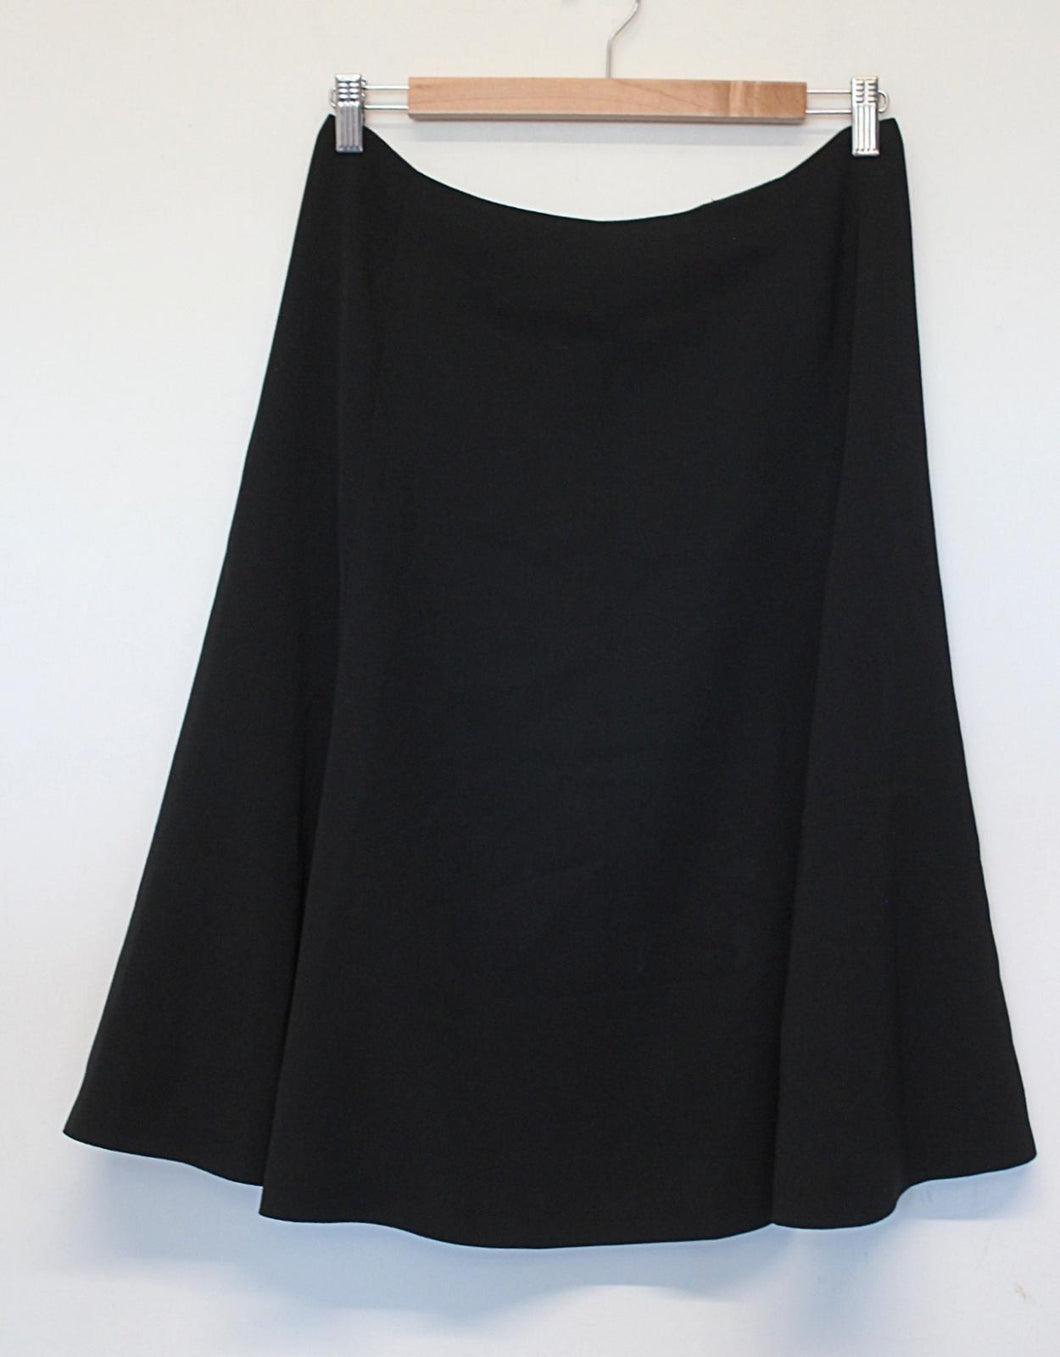 JAEGER Ladies Black Pure Wool Side Zip Knee Length A-line Skirt UK12 US10